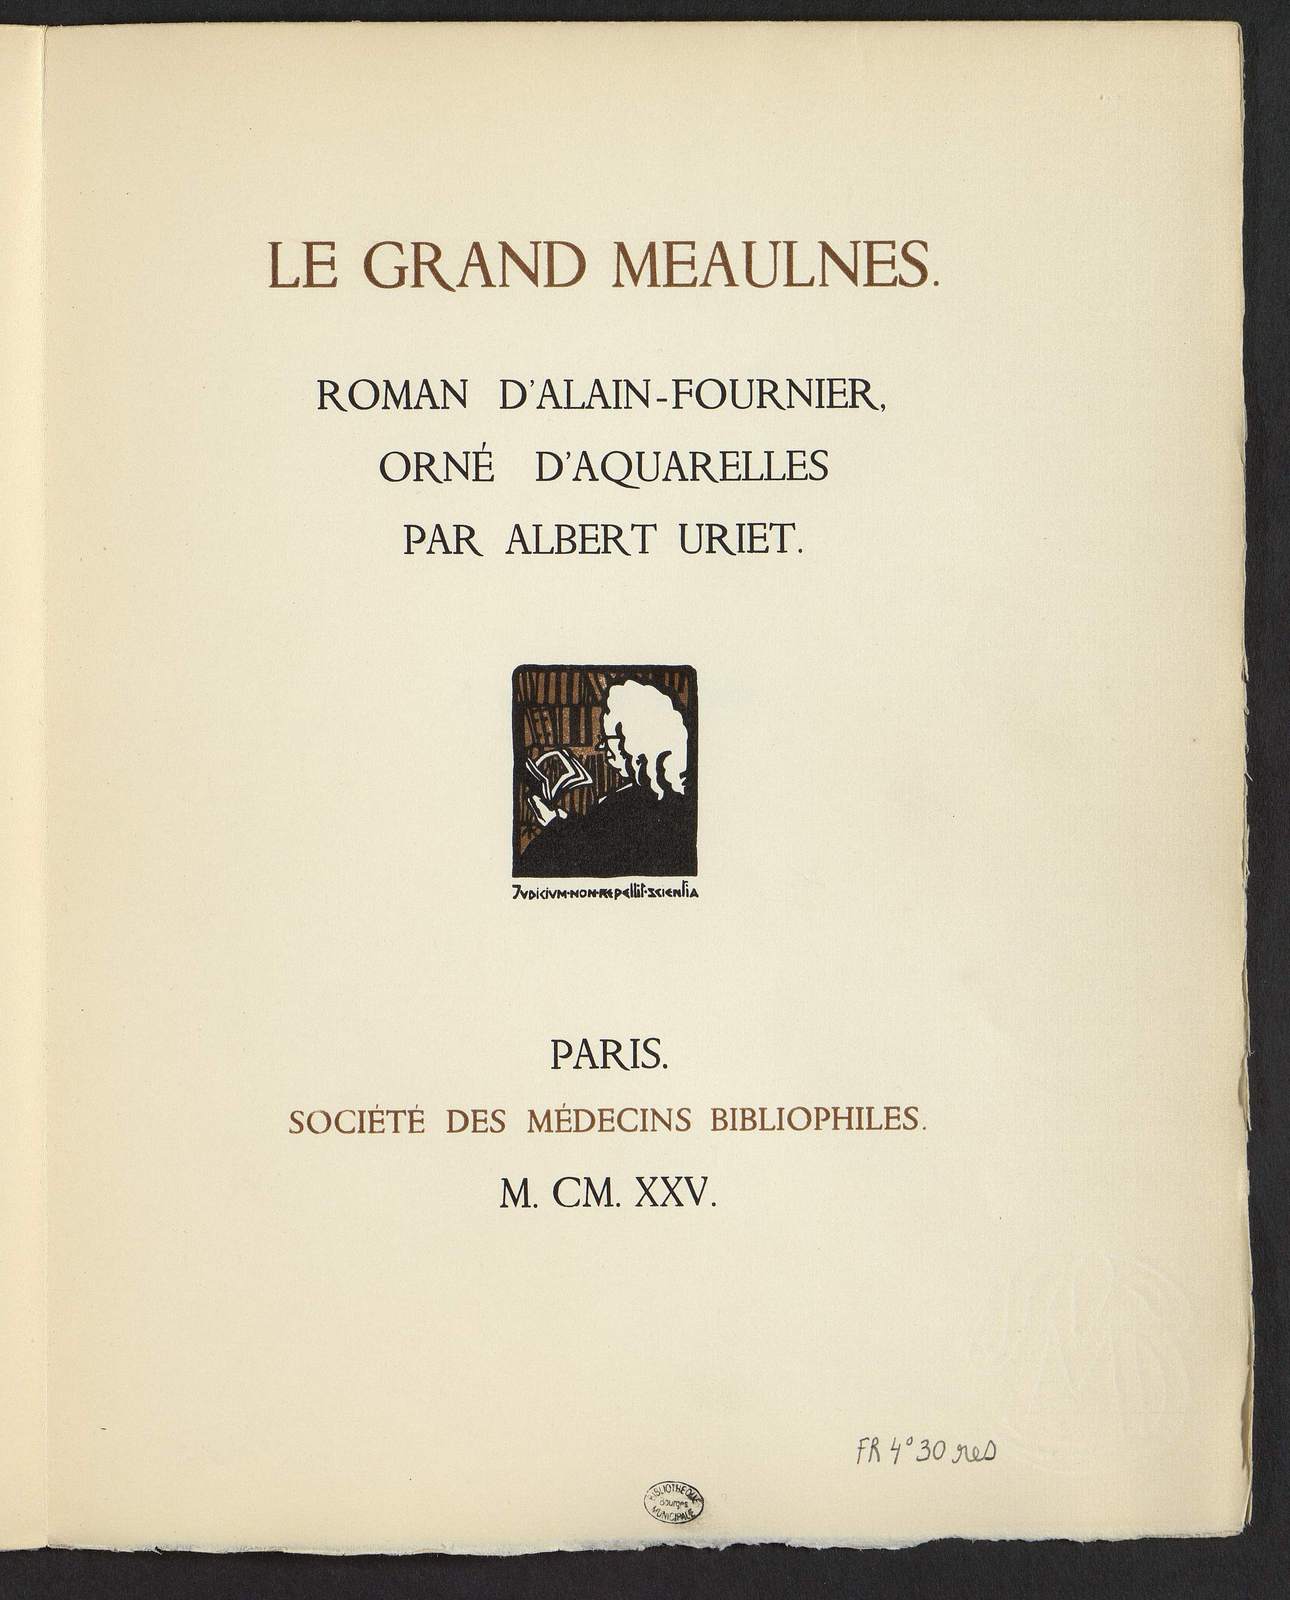 "Le Grand Meaulnes, La fête étrange, illustré par Albert Uriet, Sté des Médecins bibliophiles, 1925, "